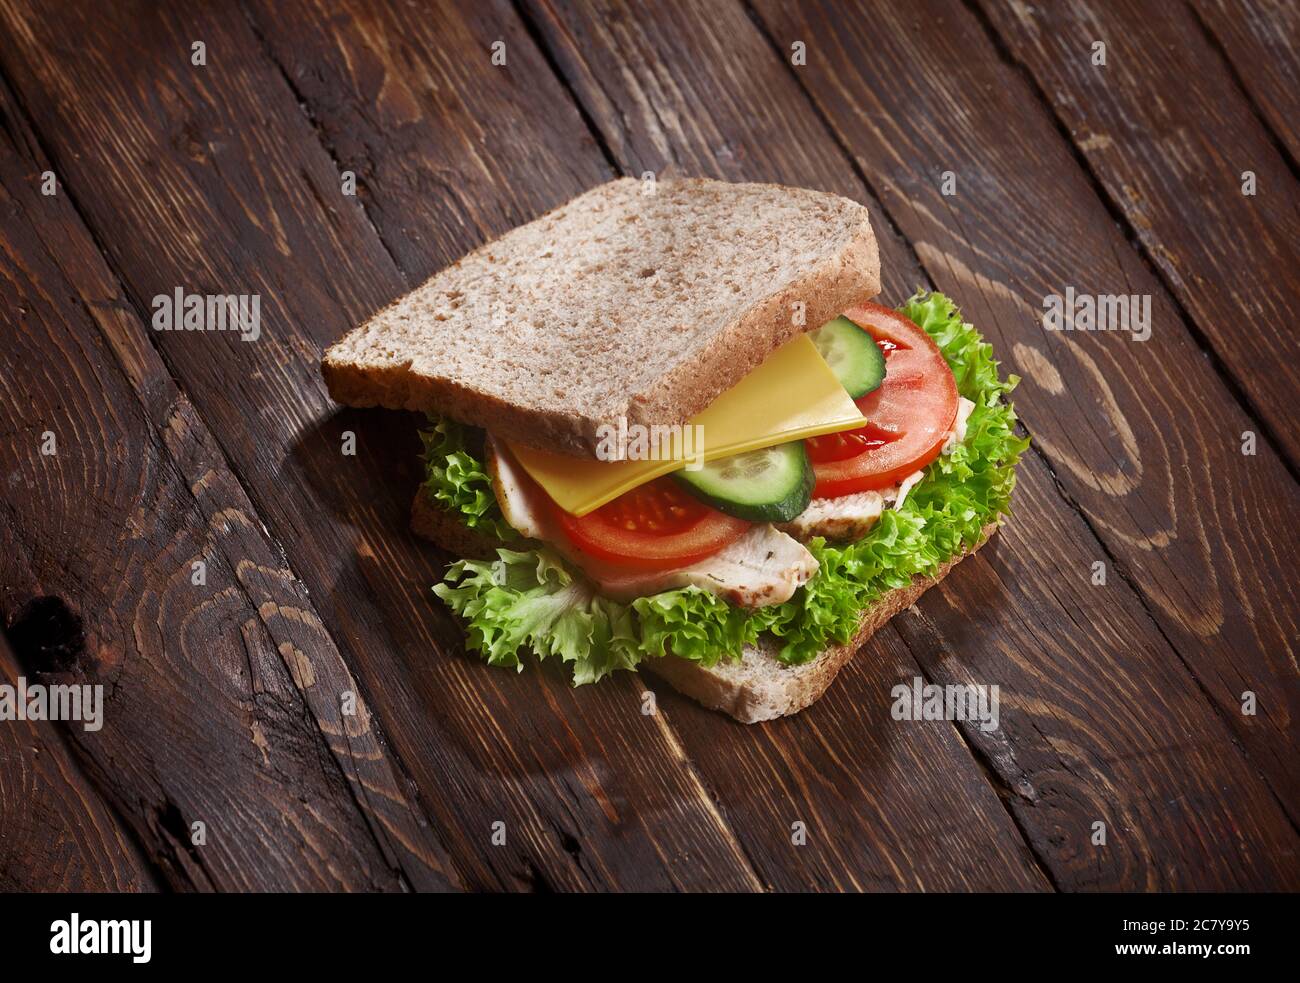 tacchino sandwich primo piano con pomodori freschi, foglie di insalata di lattuga, cetriolo e formaggio, su sfondo rustico di legno, nessuno Foto Stock